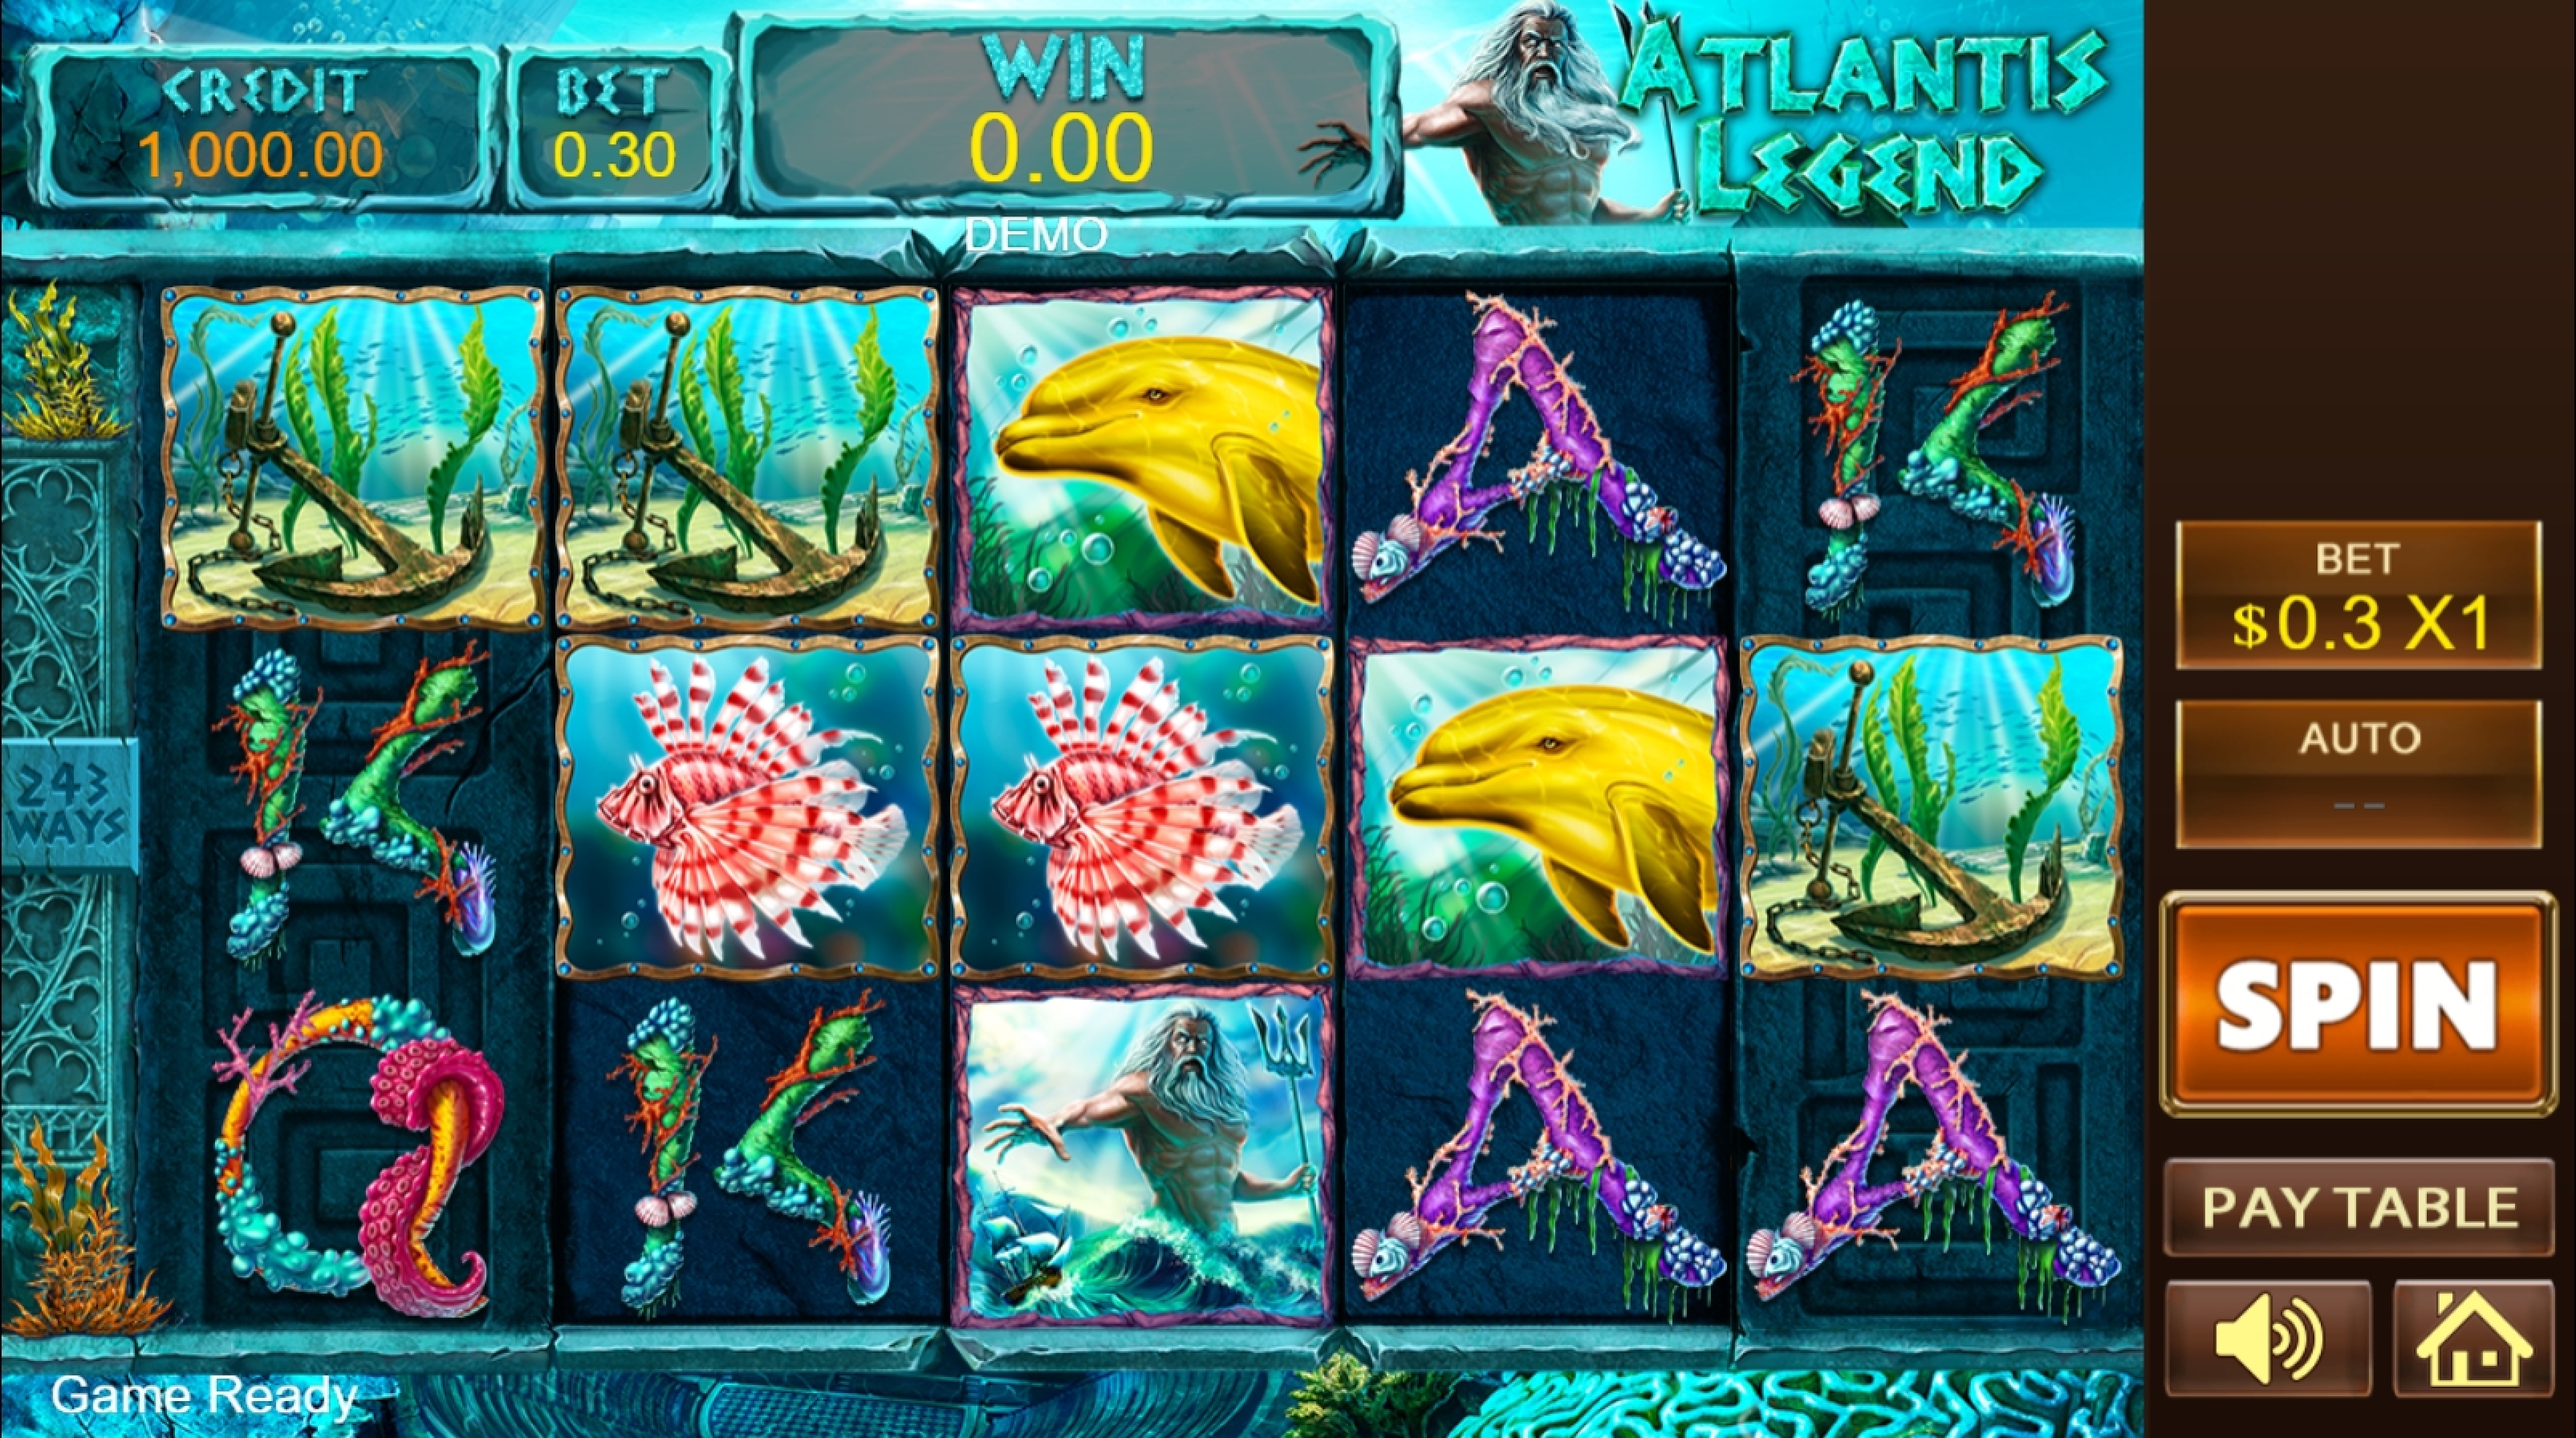 Reels in Atlantis Legend Slot Game by PlayStar